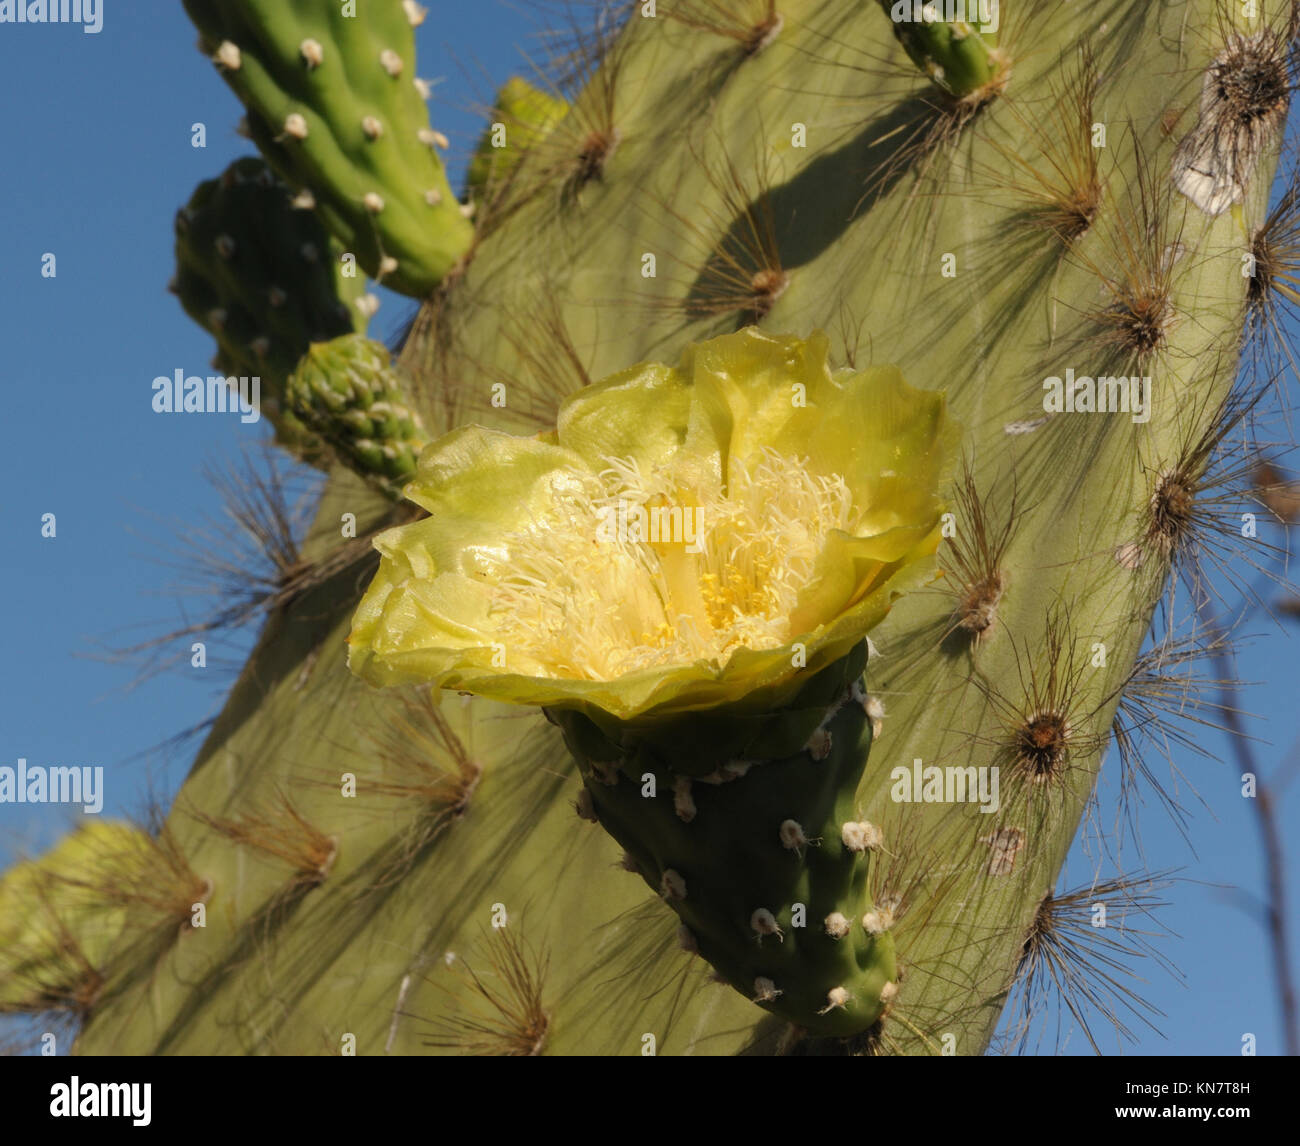 Fleur jaune gady d'un cactus de poire (espèce Opuntia). Puerto Baquerizo Moreno, San Cristobal, Galapagos, Équateur. Banque D'Images